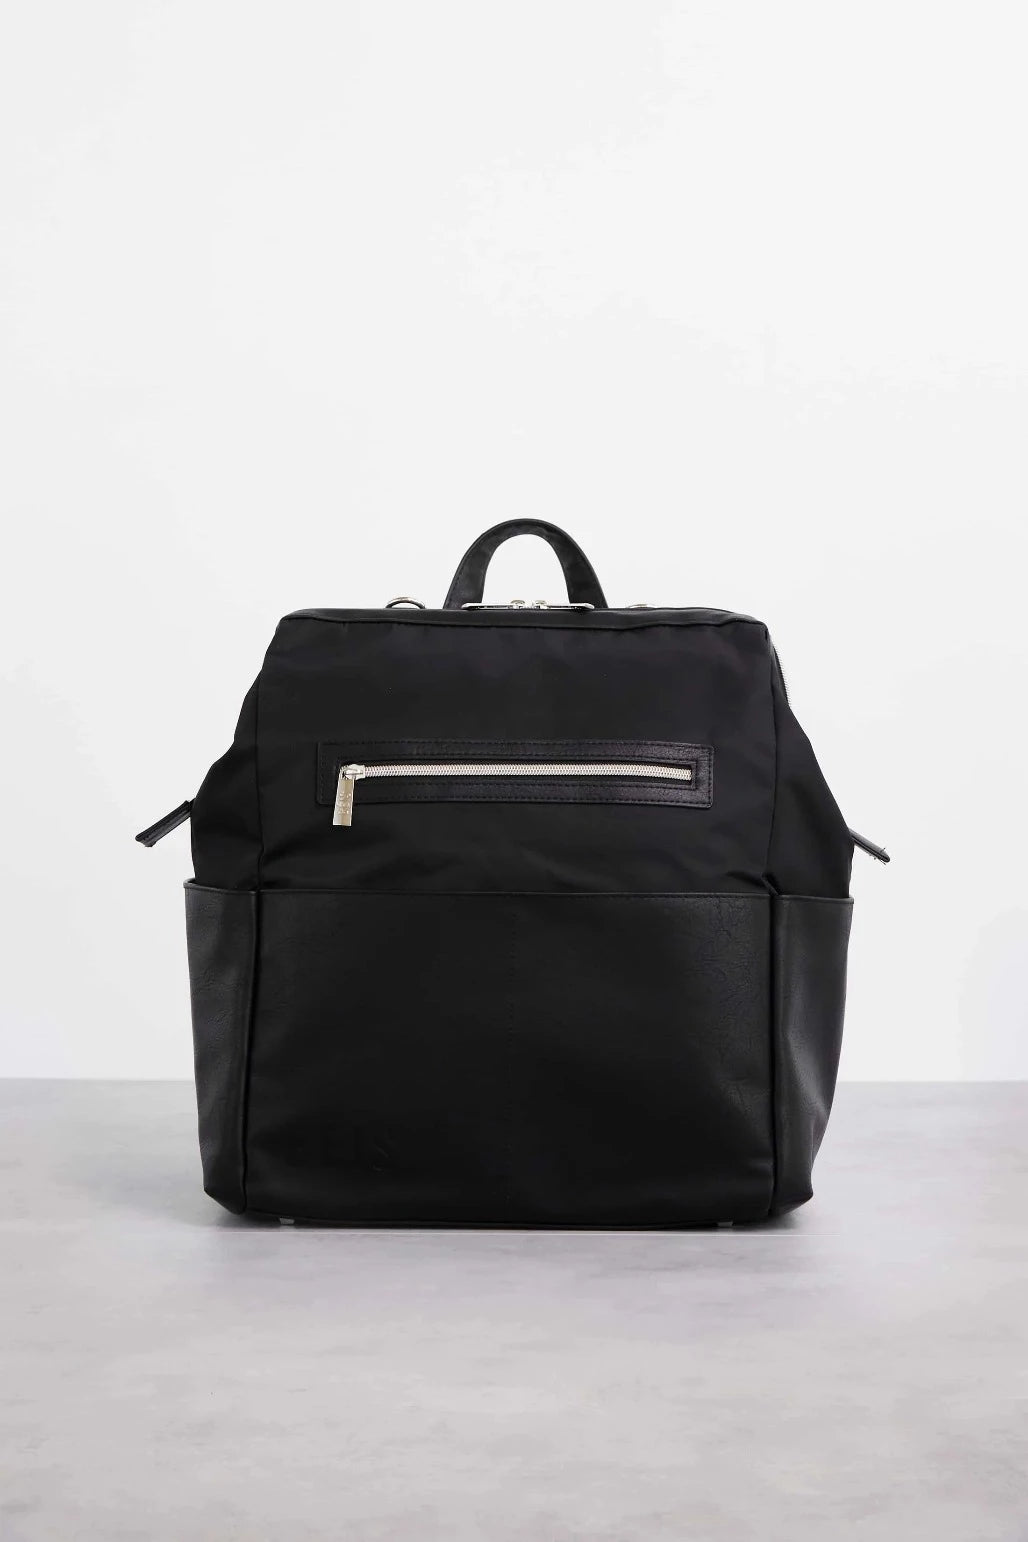 BÉIS 'The Backpack' in Black - Black Travel Backpack & Laptop Backpack